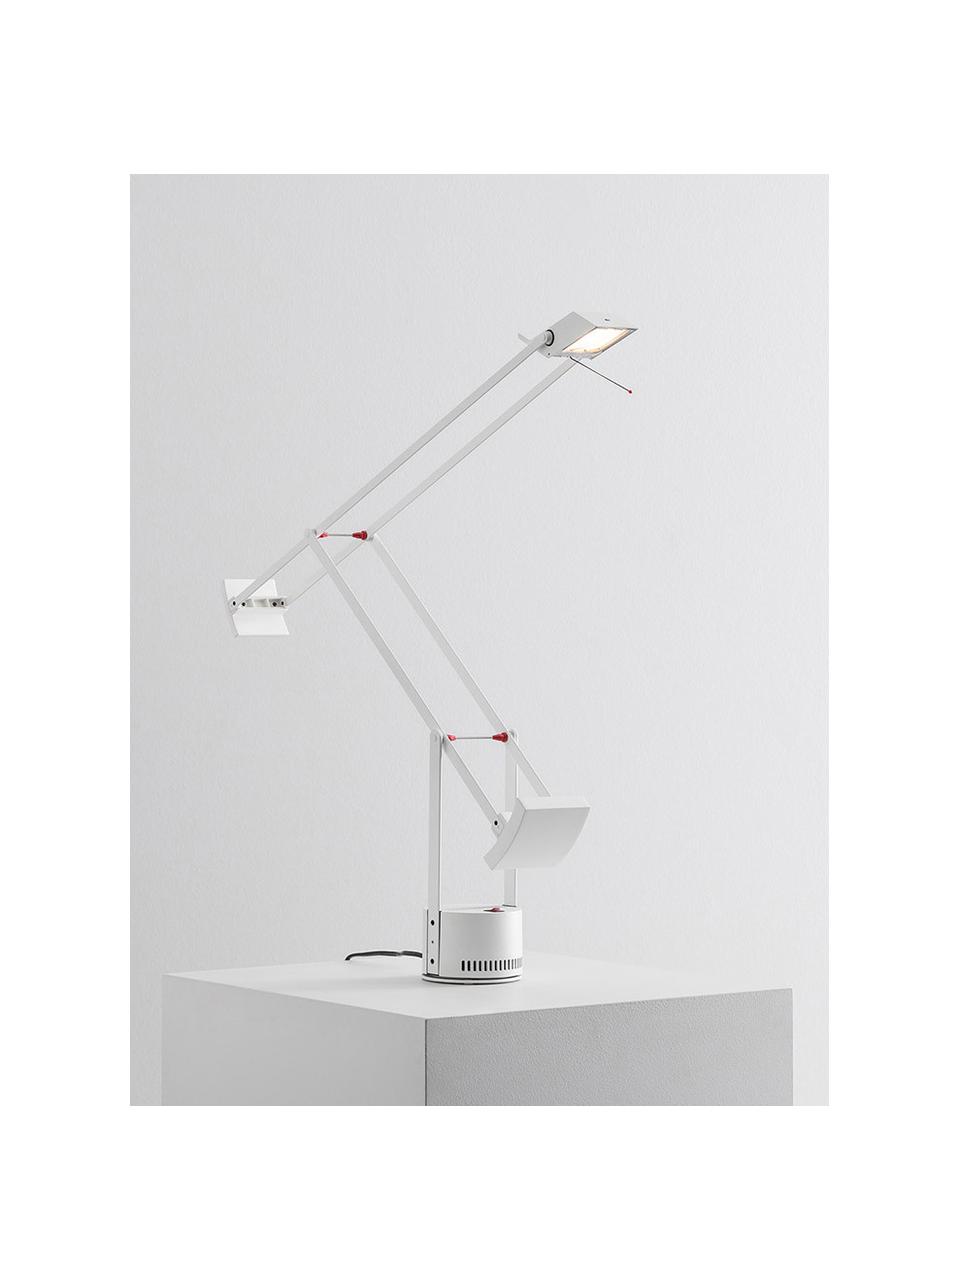 Grosse verstellbare Schreibtischlampe Tizio, Lampenschirm: Technopolymer, Gestell: Aluminium, beschichtet, Weiss, B 78 x H 66 cm